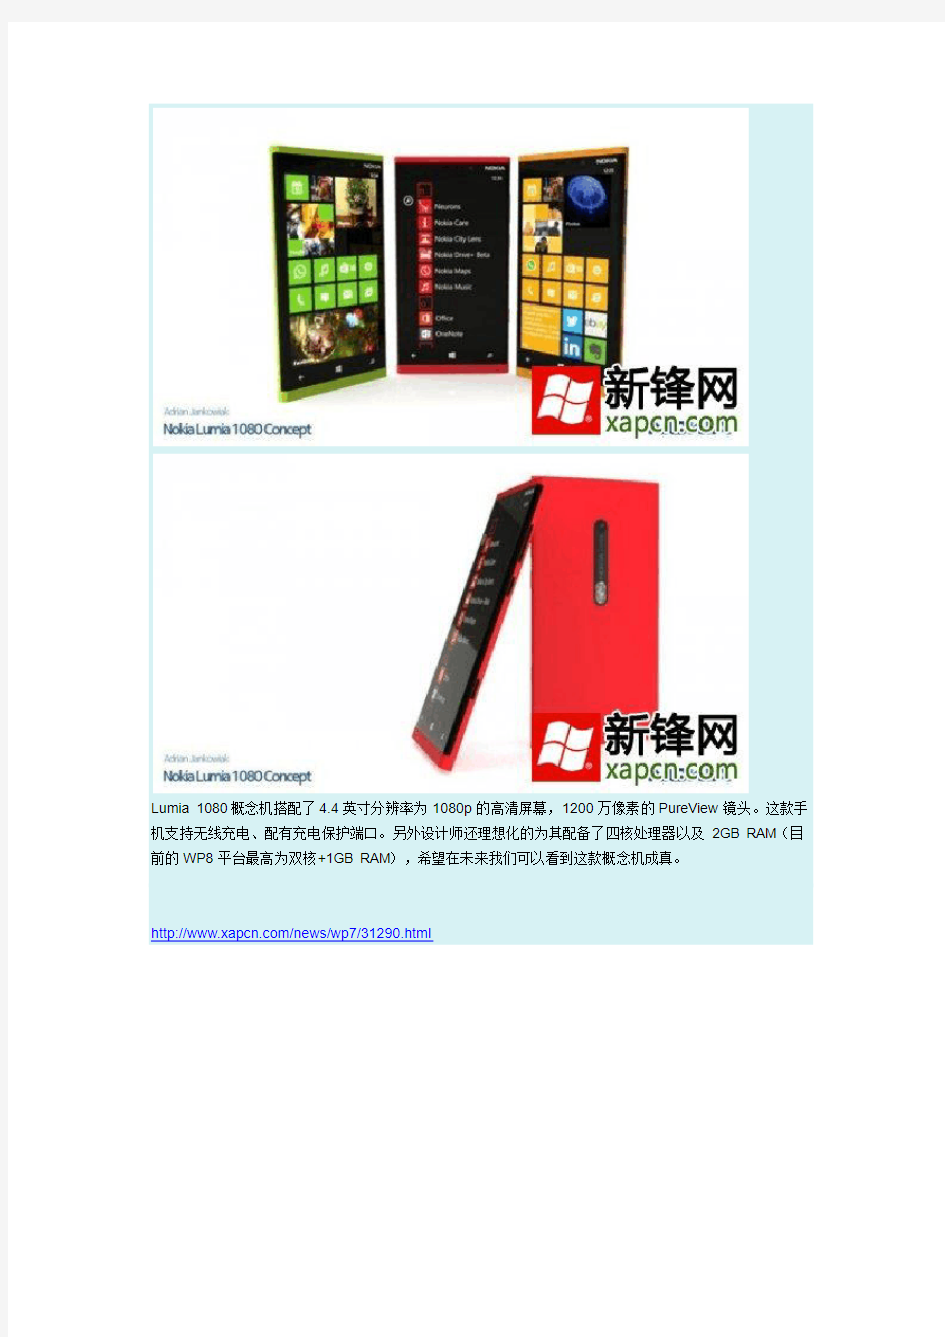 诺基亚1080的Lumia概念机